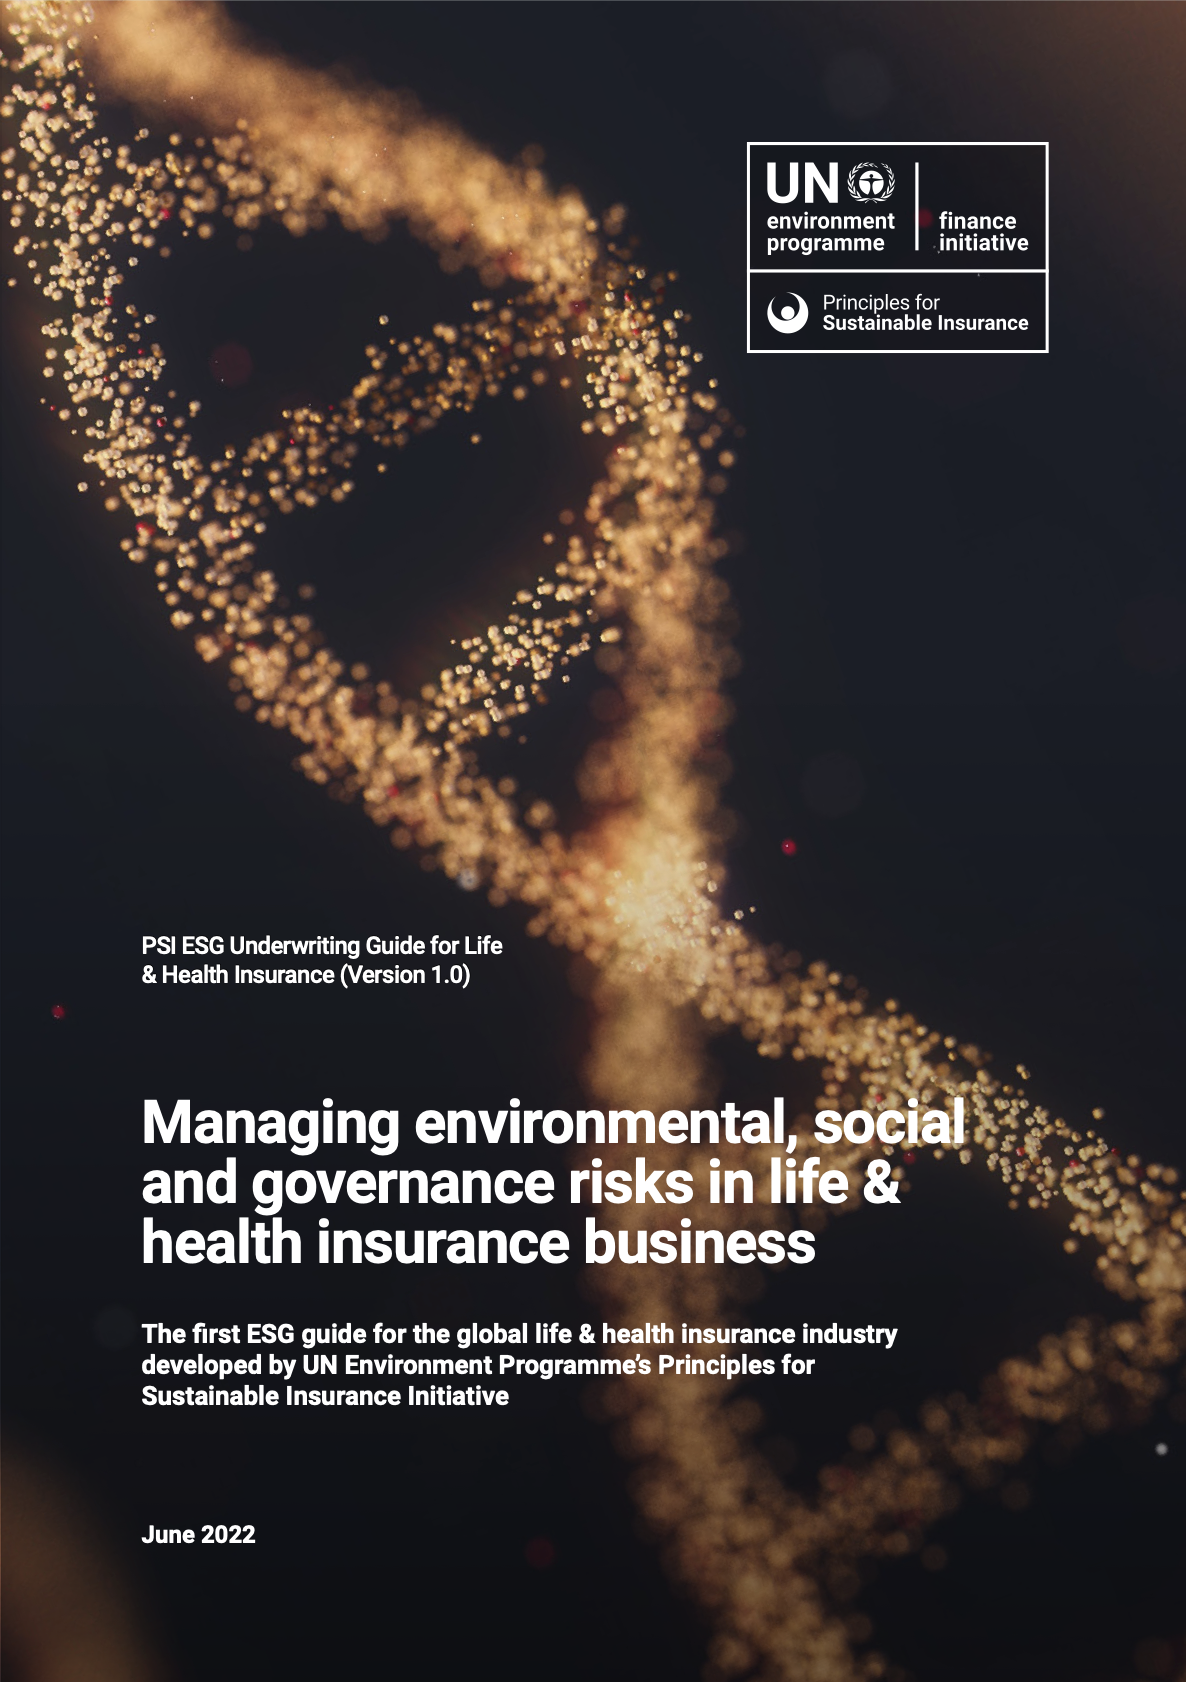 ESG engloba responsabilidade social e saúde mental - Sinapsys News